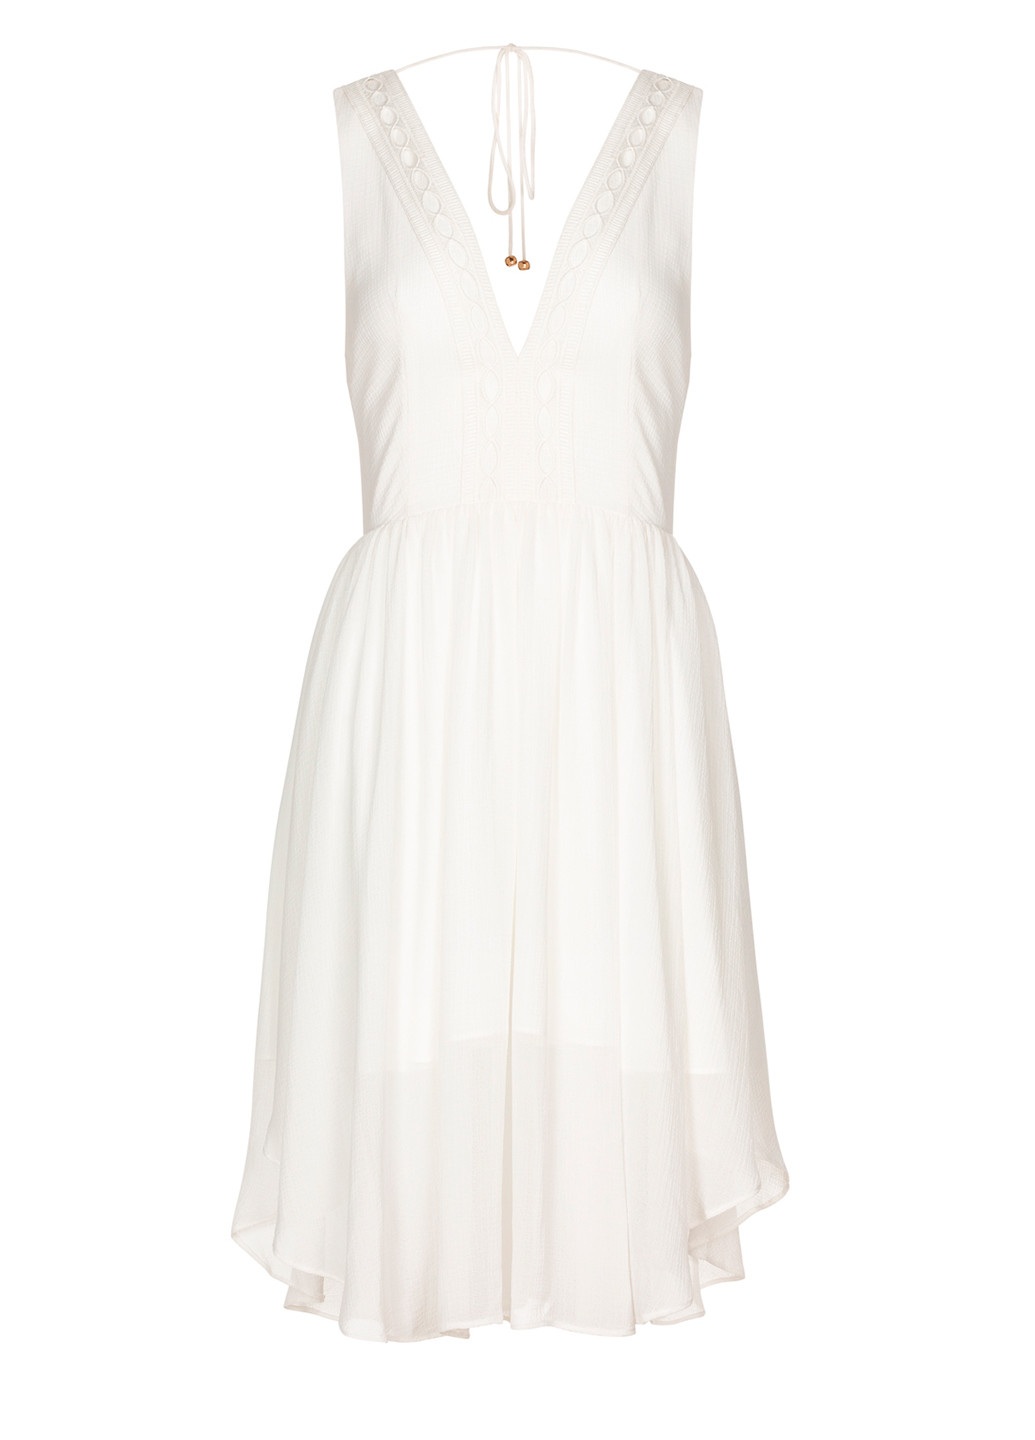 Білий коктейльна шифоновое платье с глубоким декольте кльош, з відкритою спиною, а-силует Finders Keepers однотонна